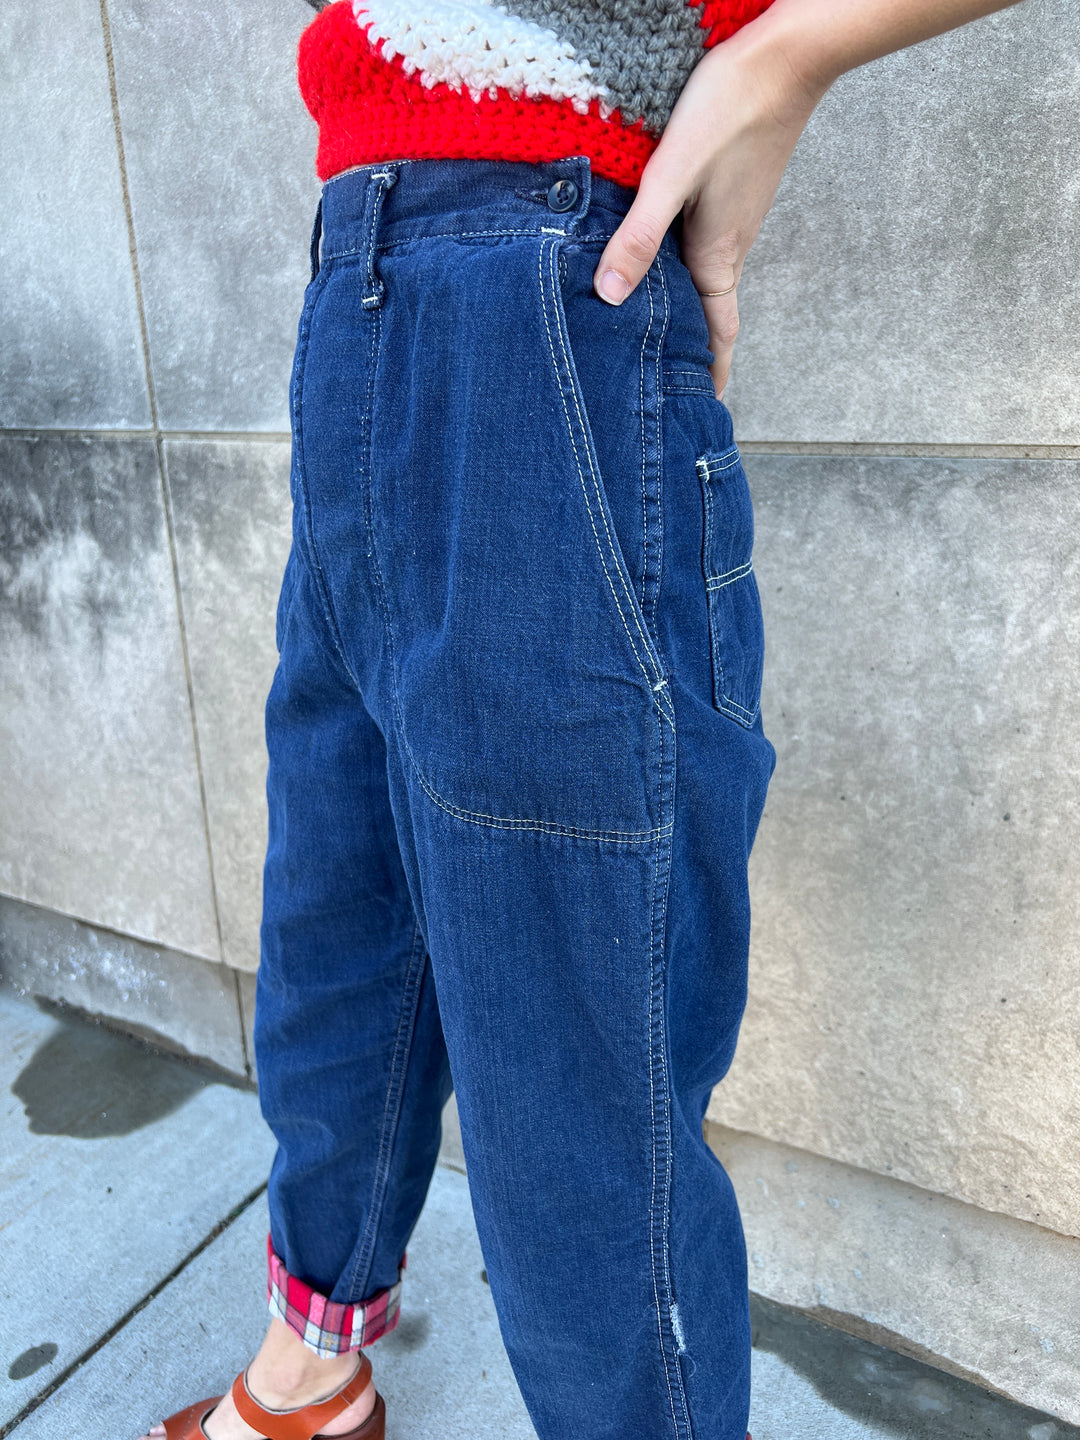 40s/50s Denim Jeans, Flannel Lined, Side Zipper in Pocket